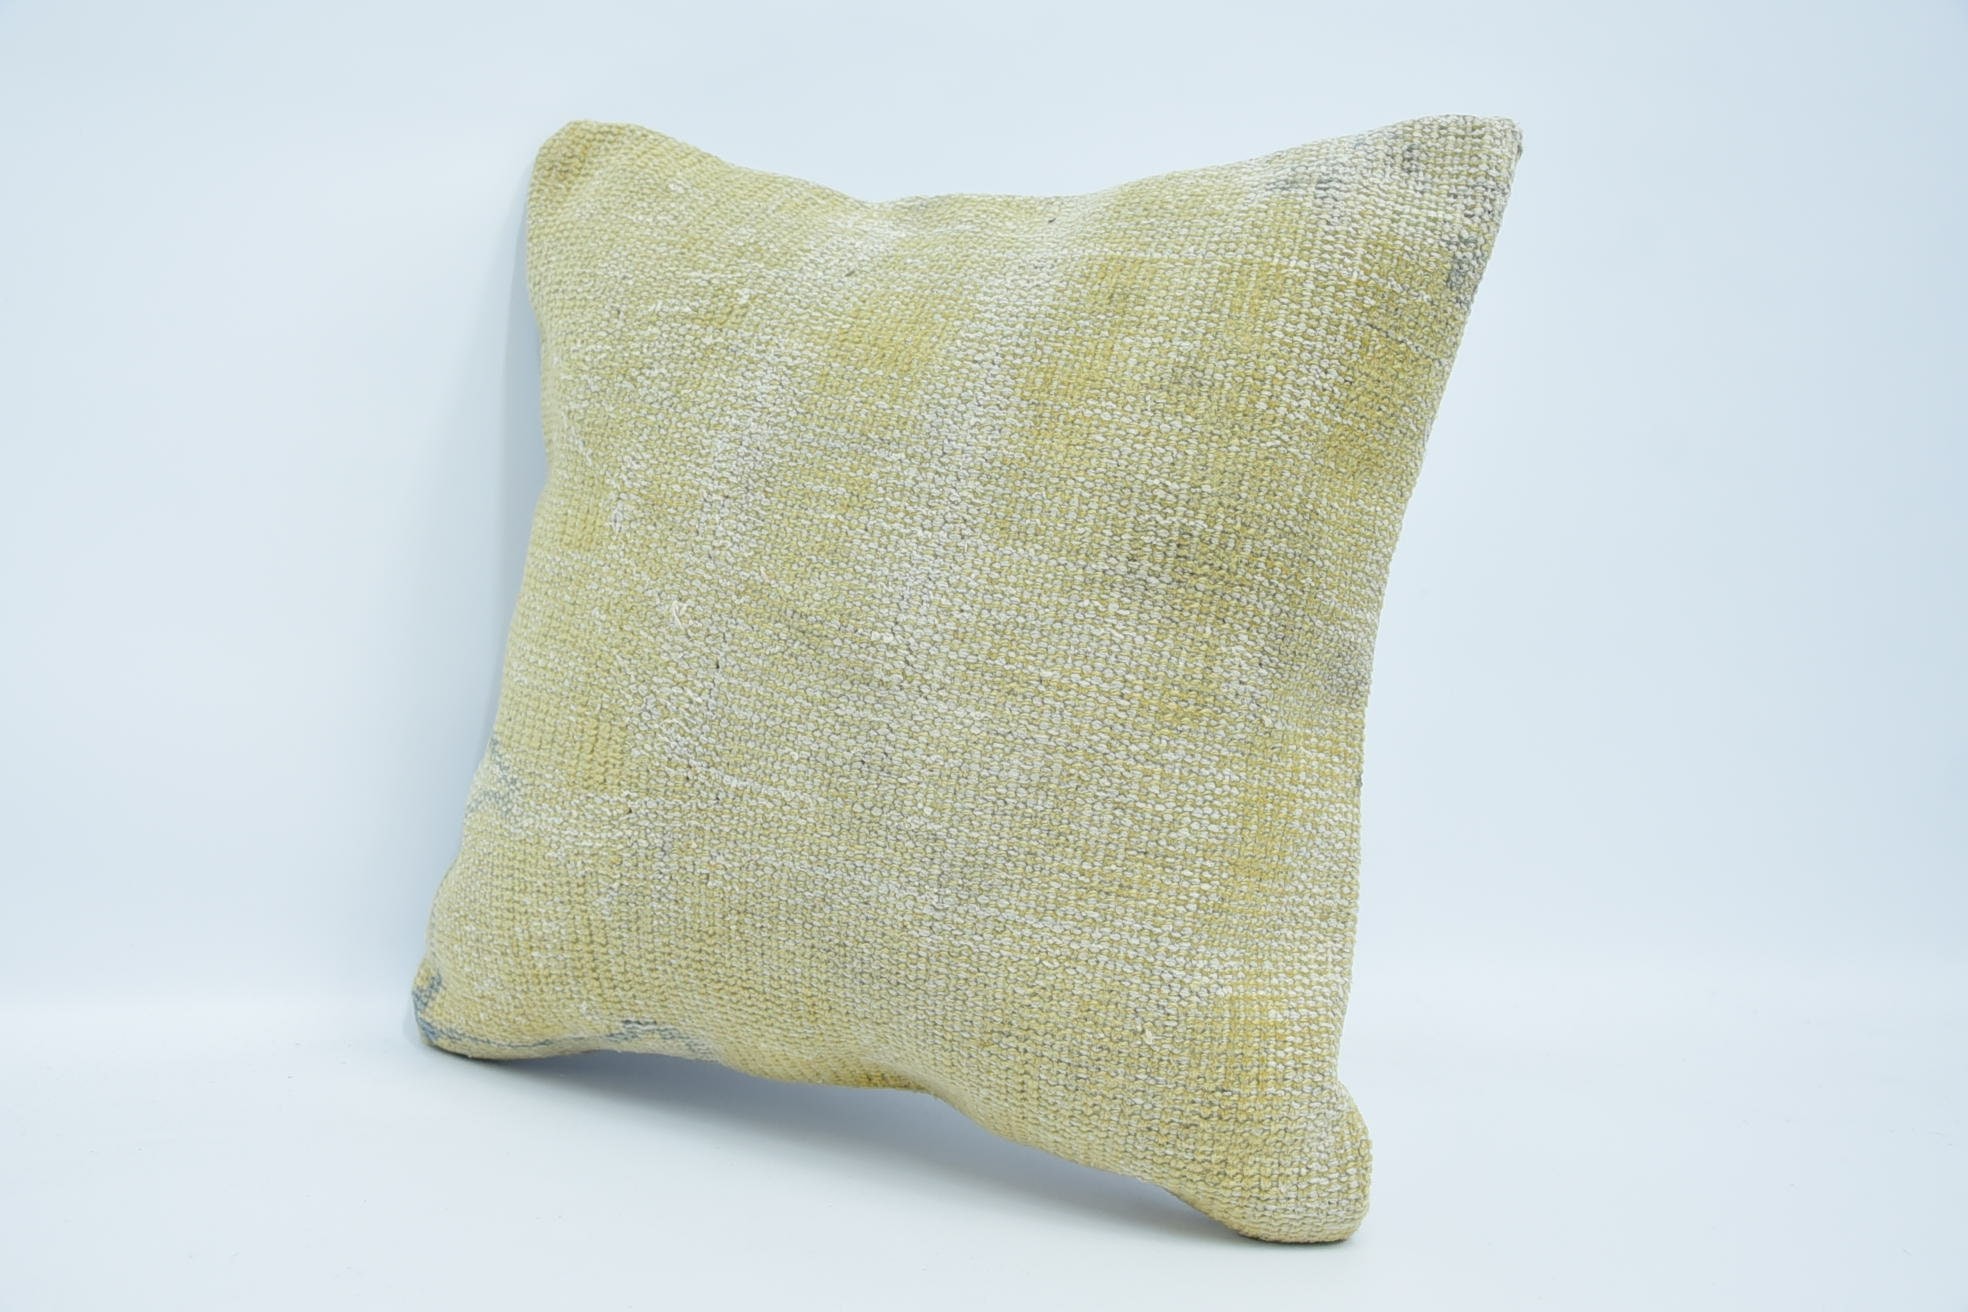 Cotton Pillow, Oriental Cushion Case, Antique Pillows, Kilim Rug Pillow, Handmade Kilim Cushion, 18"x18" Beige Cushion Case, Gift Pillow